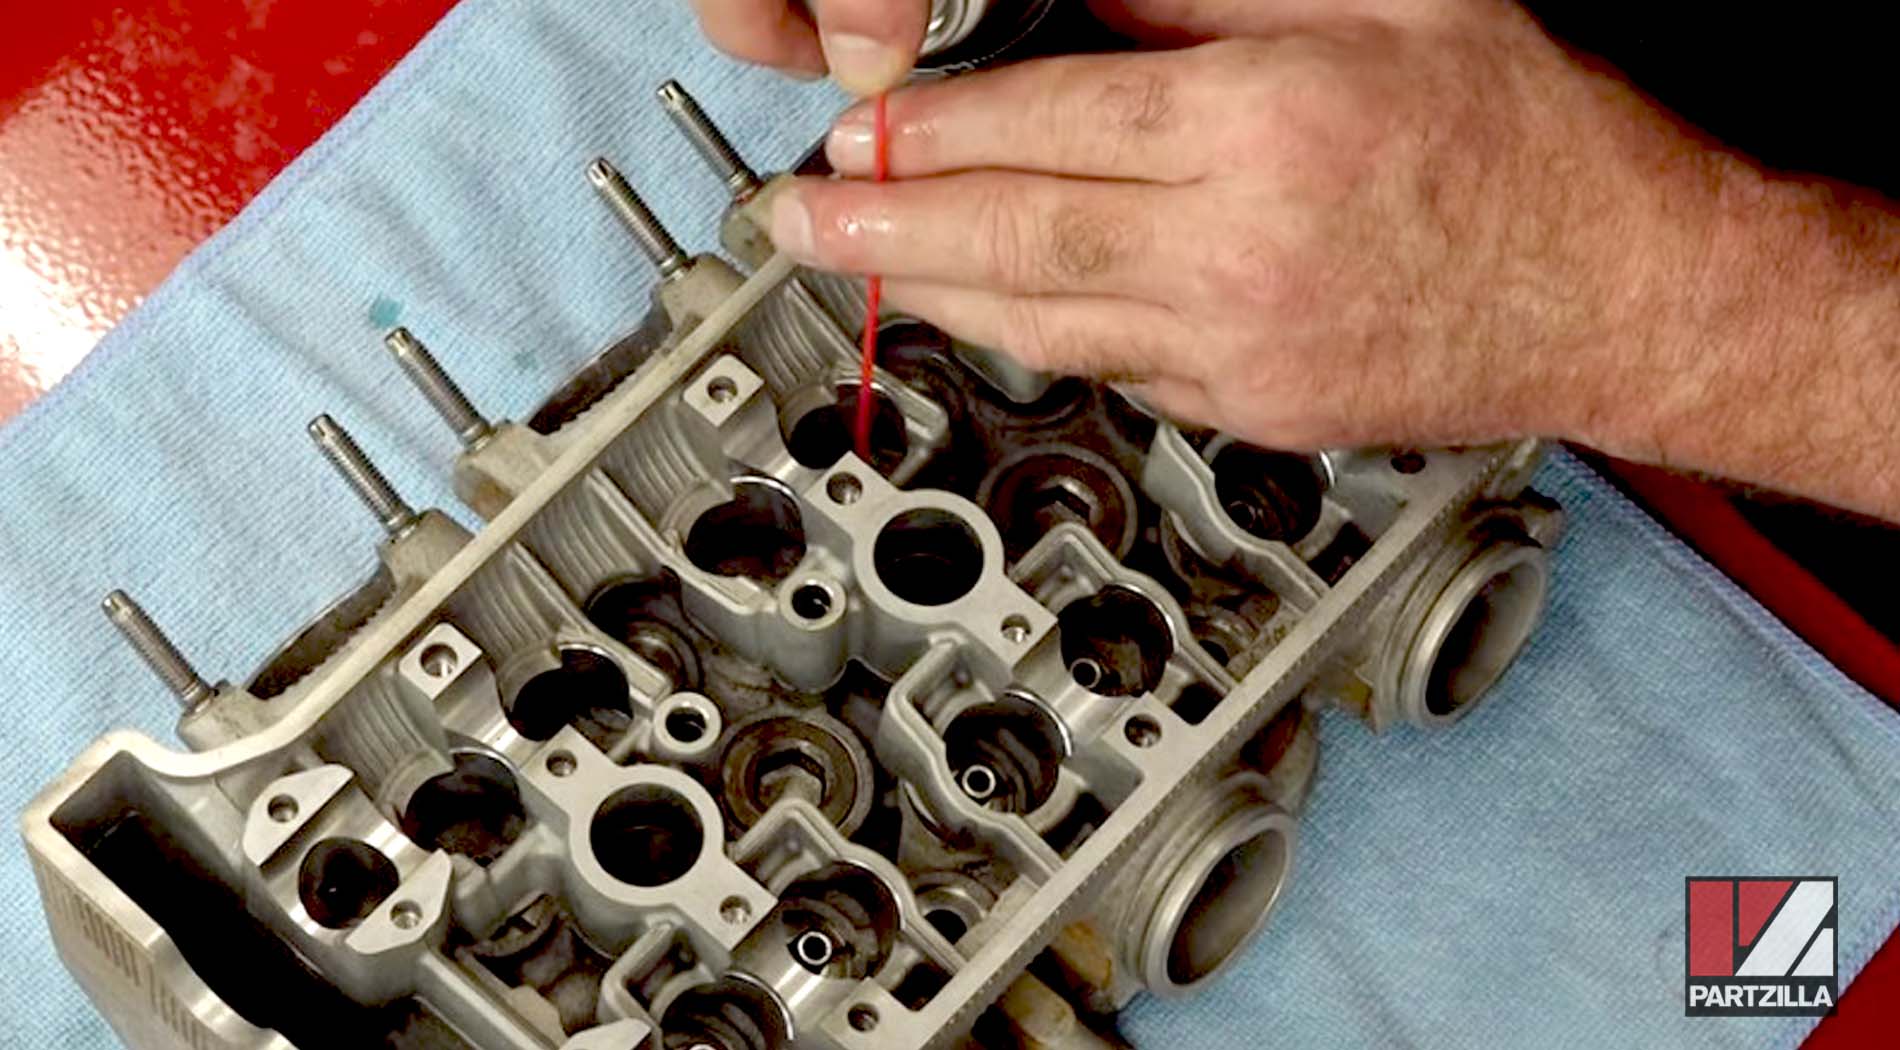 Yamaha YXZ1000R engine rebuild valve guide cleaning